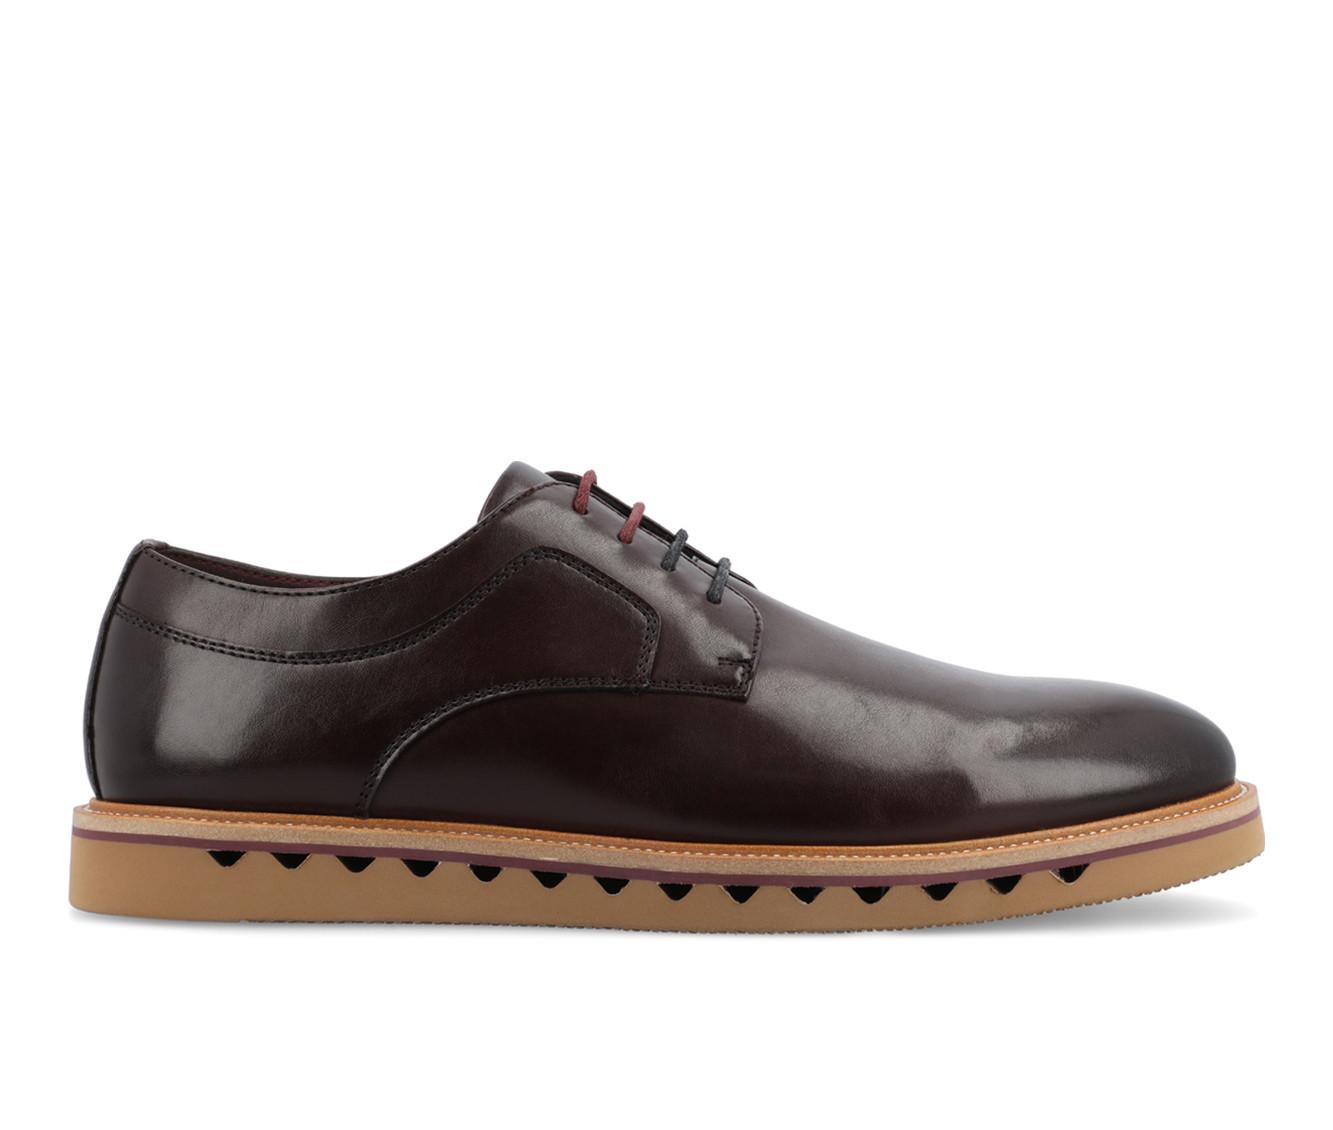 Men's Vance Co. William Dress Shoes